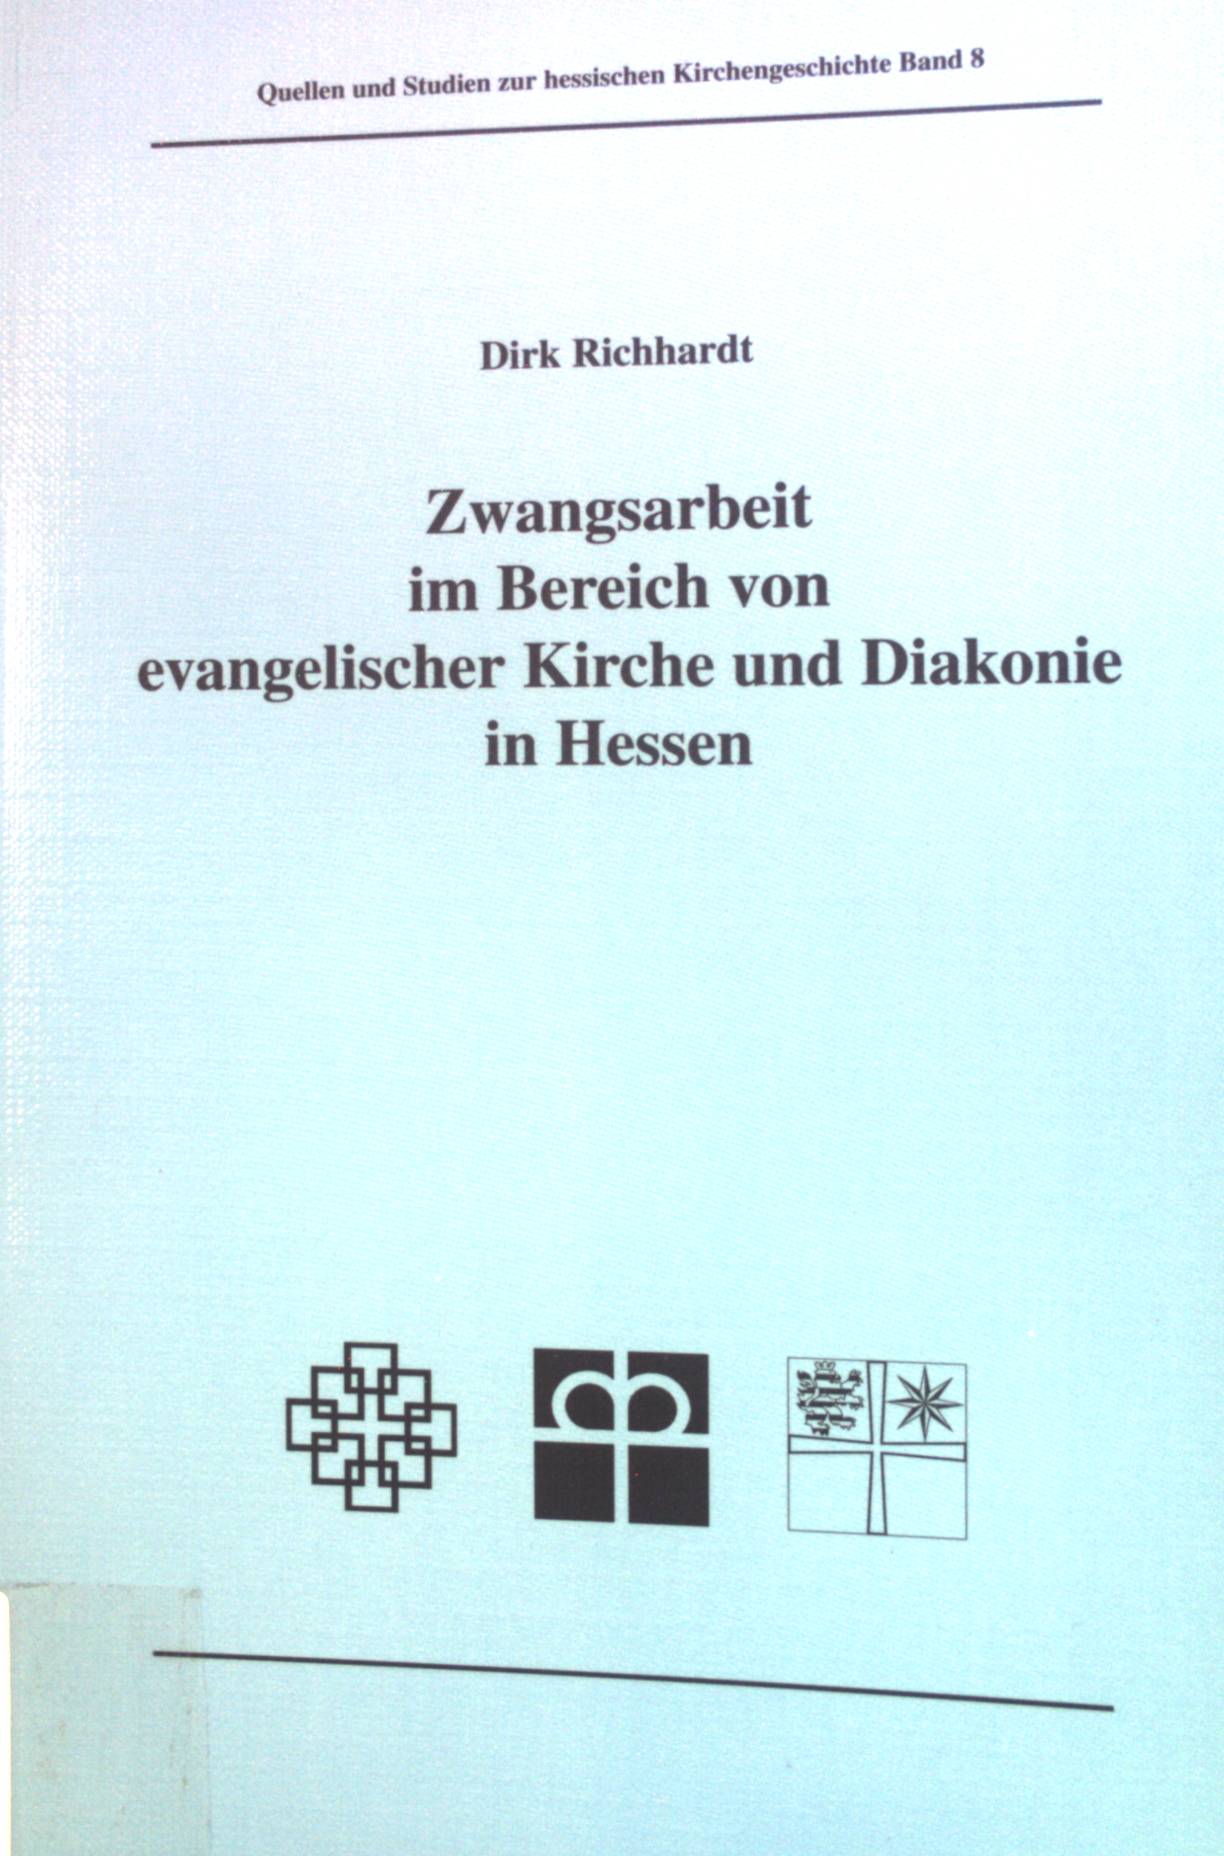 Zwangsarbeit im Bereich von evangelischer Kirche und Diakonie in Hessen. Quellen und Studien zur hessischen Kirchengeschichte, Bd. 8 - Richhardt, Dirk